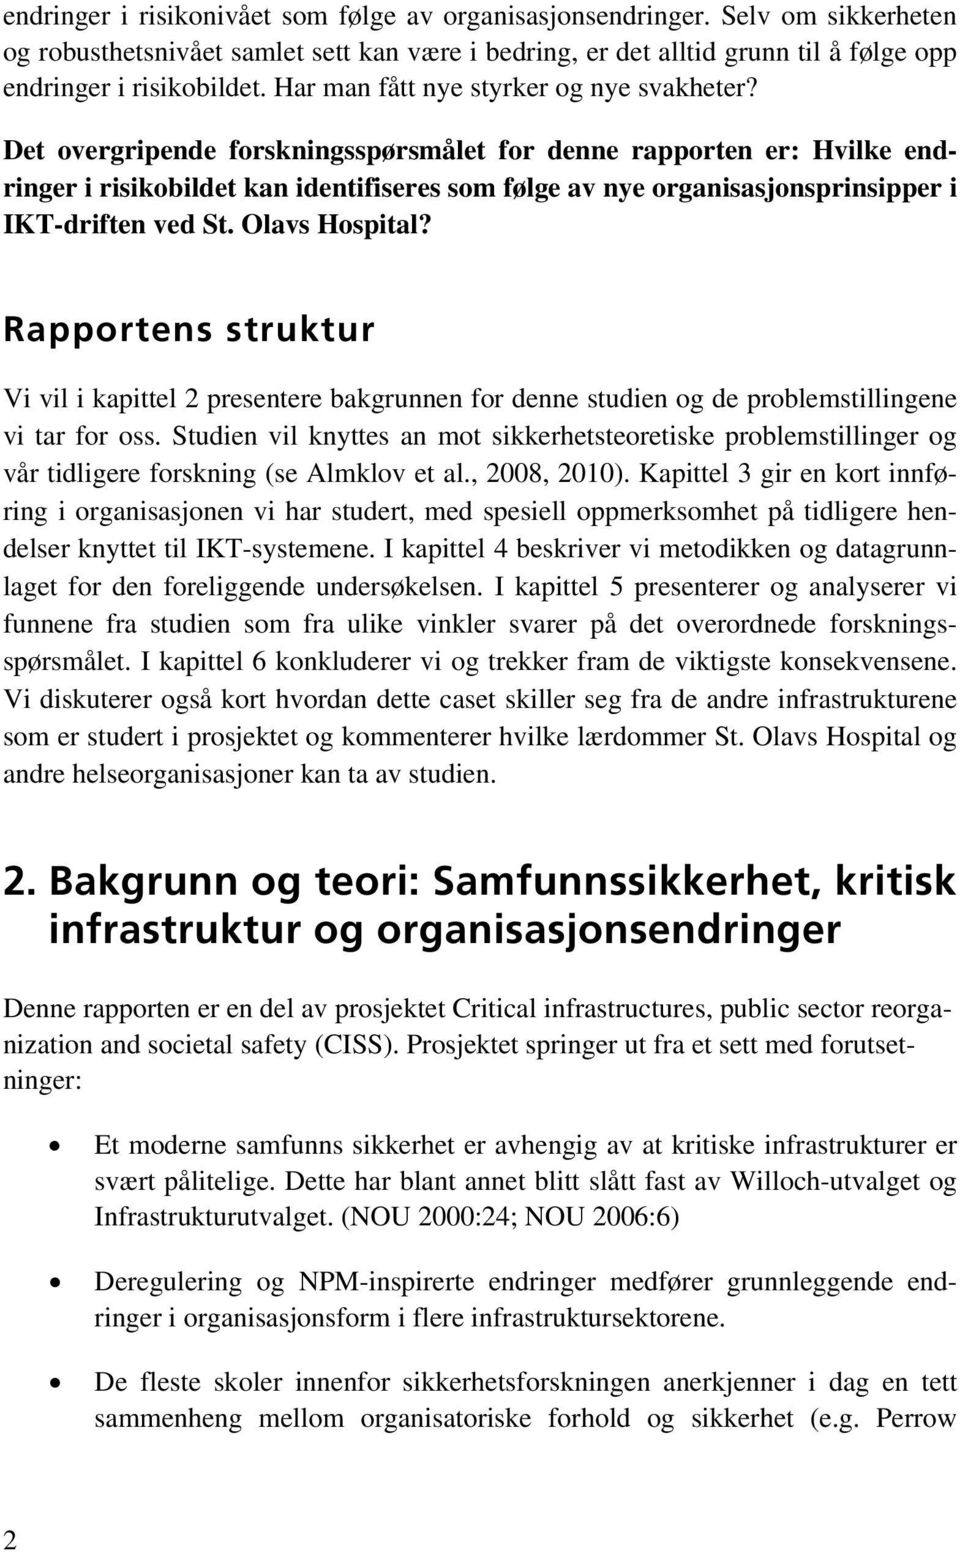 Det overgripende forskningsspørsmålet for denne rapporten er: Hvilke endringer i risikobildet kan identifiseres som følge av nye organisasjonsprinsipper i IKT-driften ved St. Olavs Hospital?